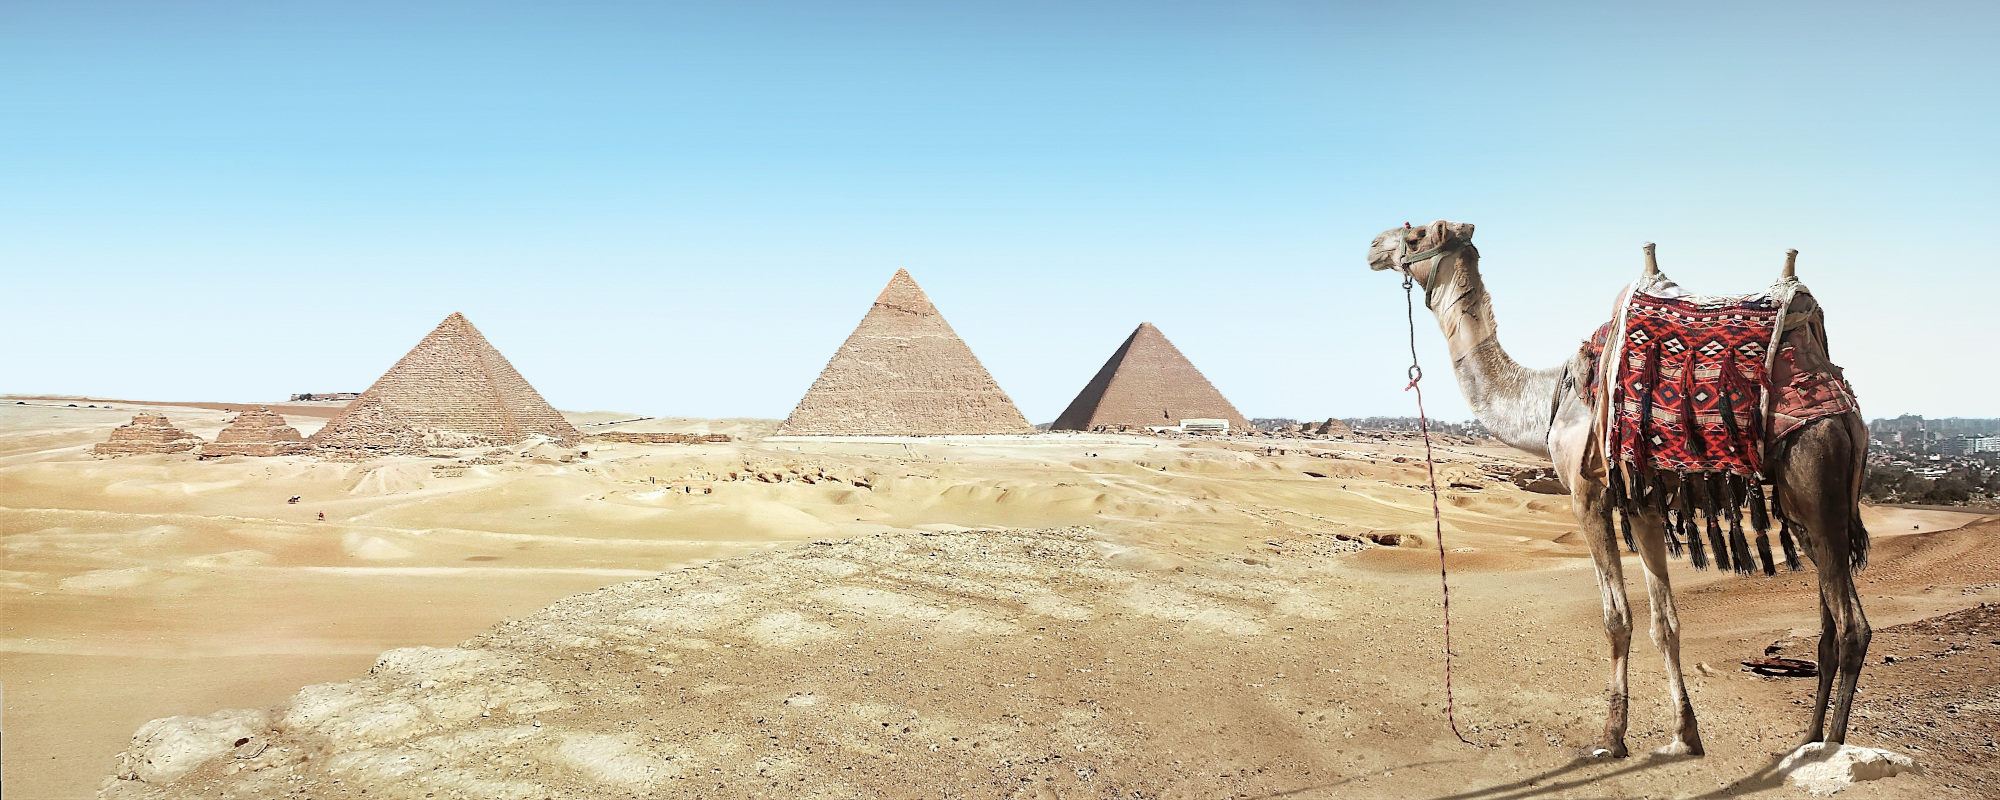 Pyramiden in Wüste mit Kamel im Vordergrund